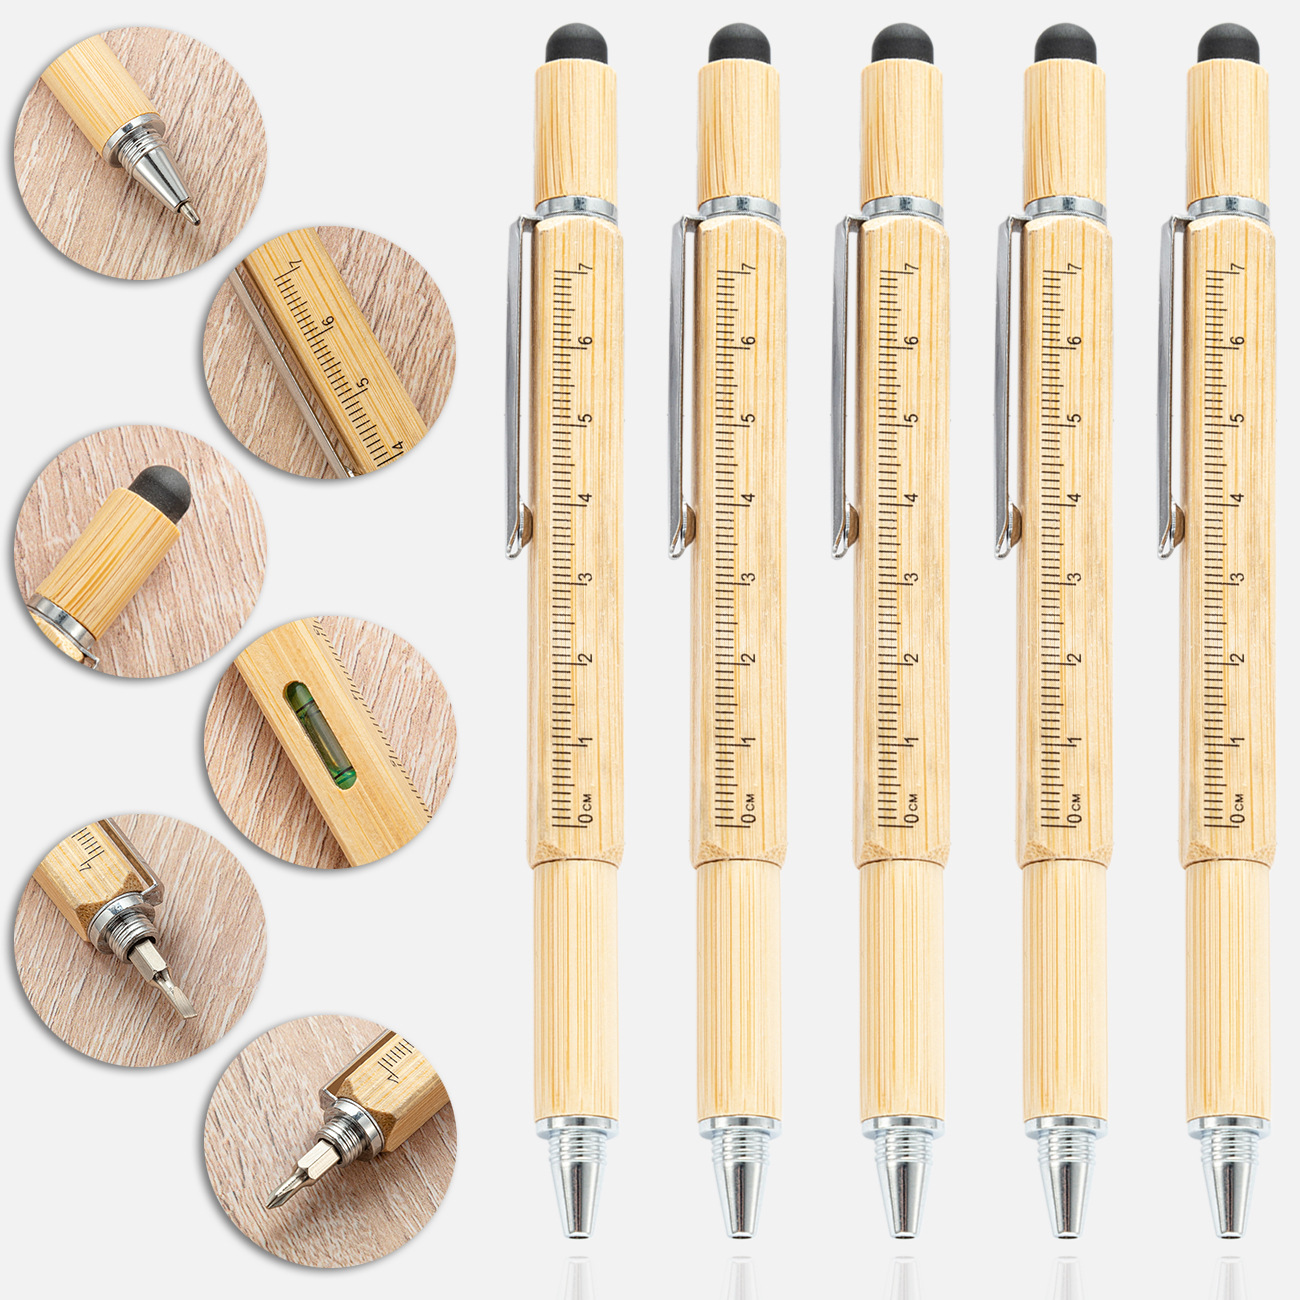 新款竹子工具笔六合一螺丝刀水平仪刻度尺触屏笔户外多功能工具笔